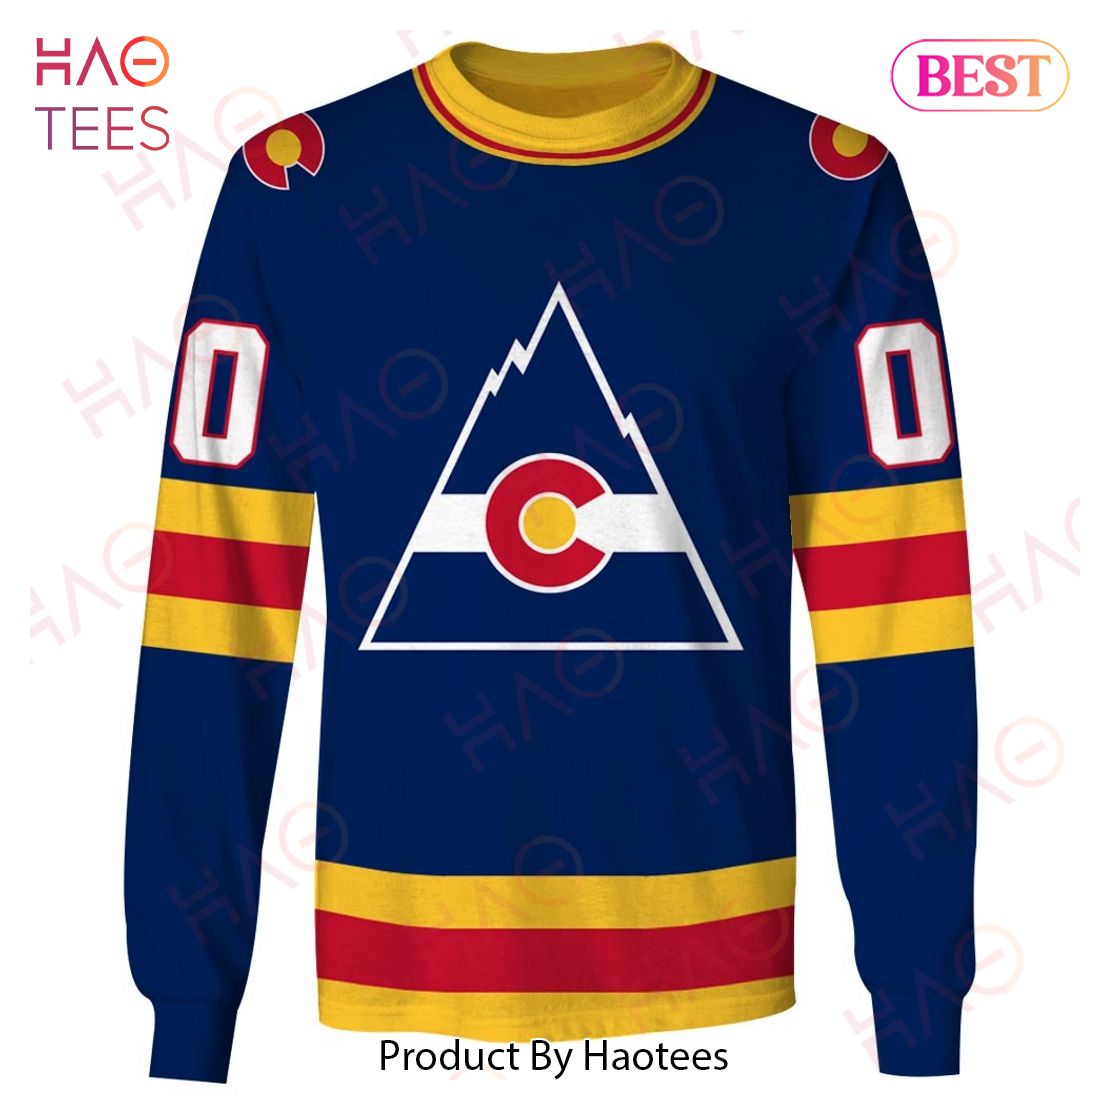 concept colorado rockies hockey jersey